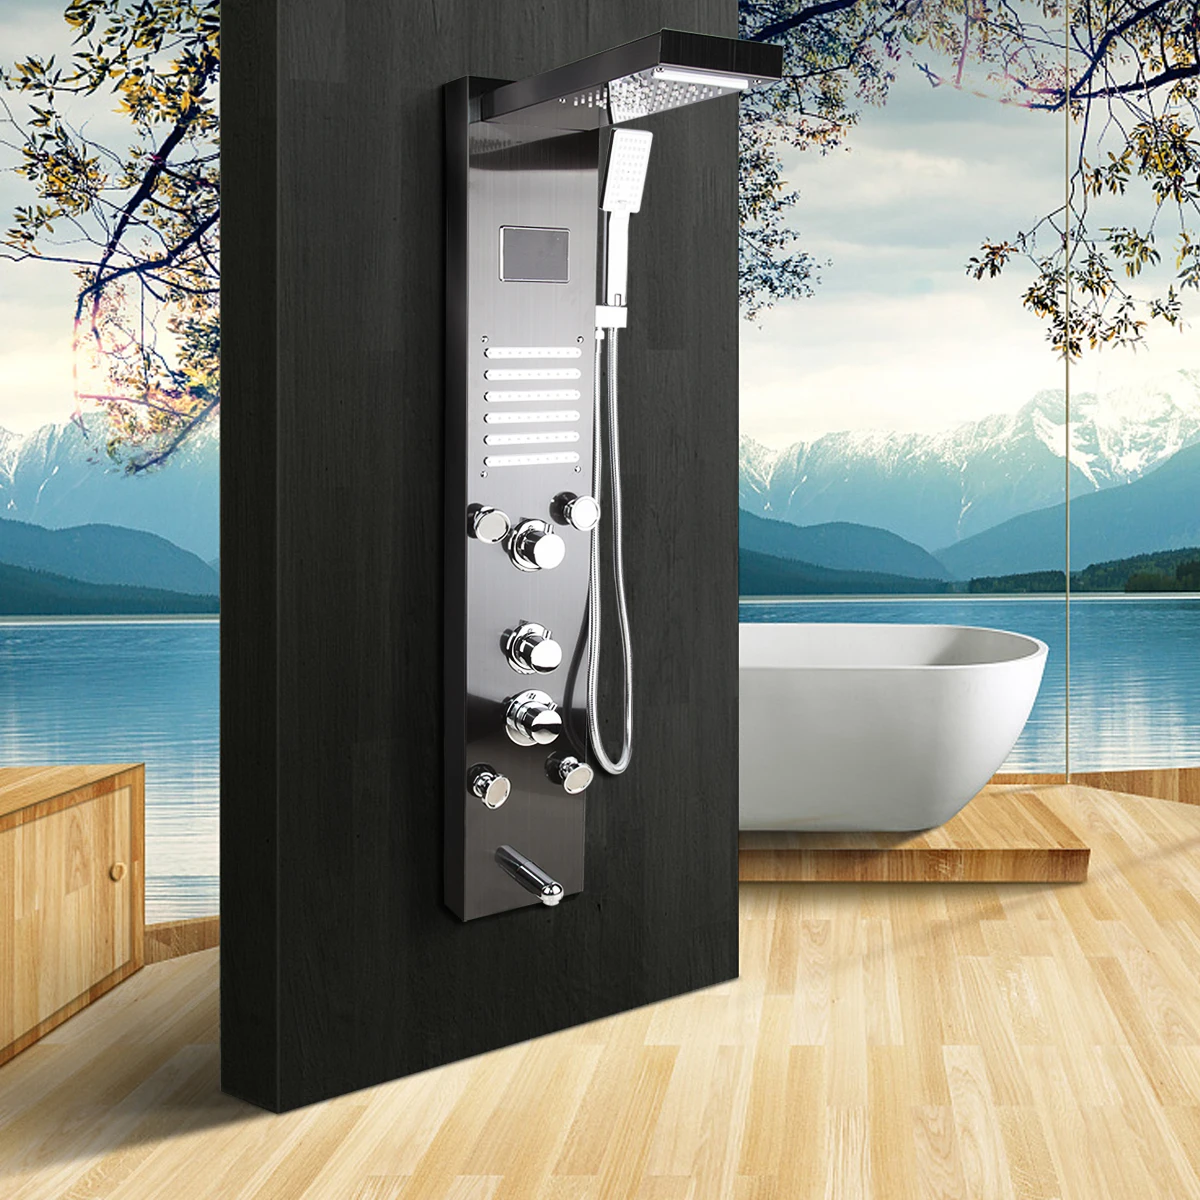 KEMAIDI Ванная комната черный набор для душа Настенные " смеситель для душа в форме дождя кран 3-функции смеситель клапан